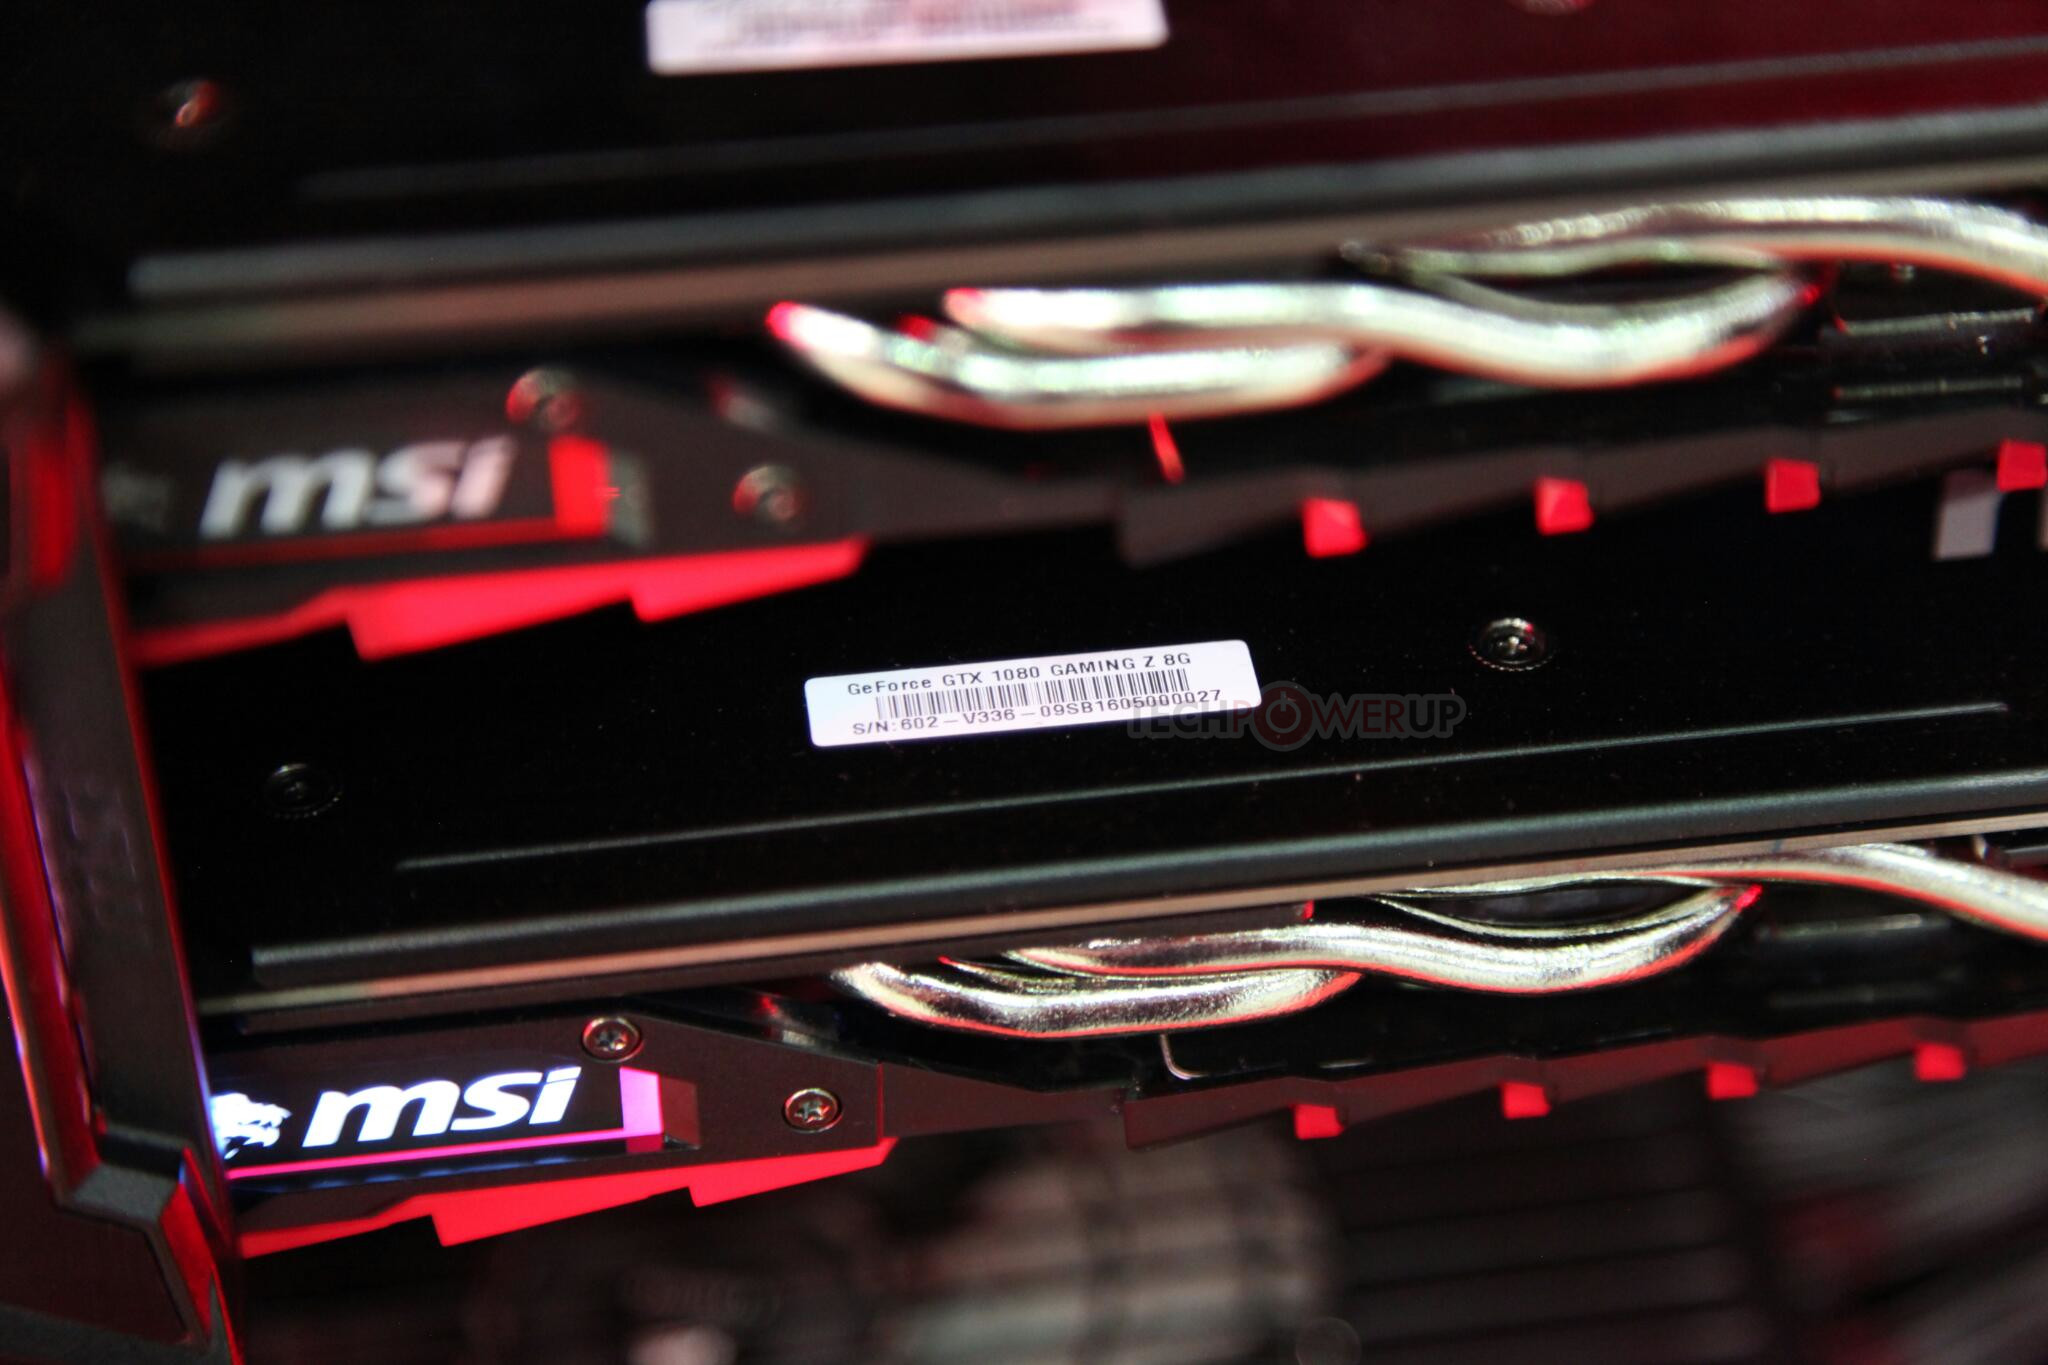 店舗併売品 GTX GeForce MSI 1070 8G Z GAMING PCパーツ